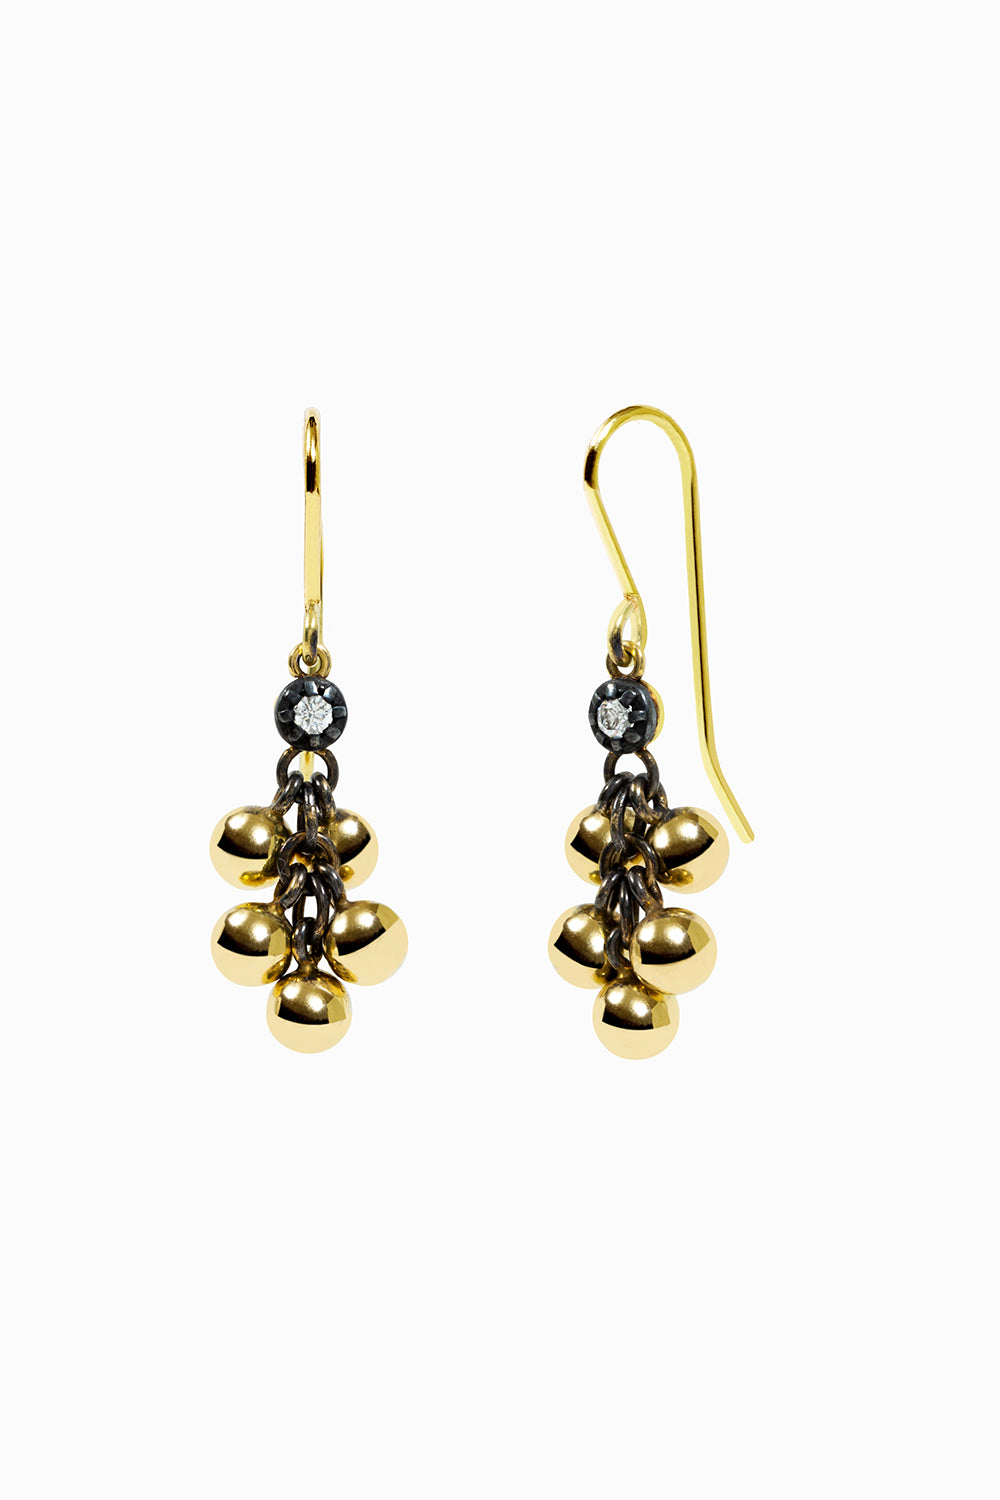 Racimo earrings with diamonds